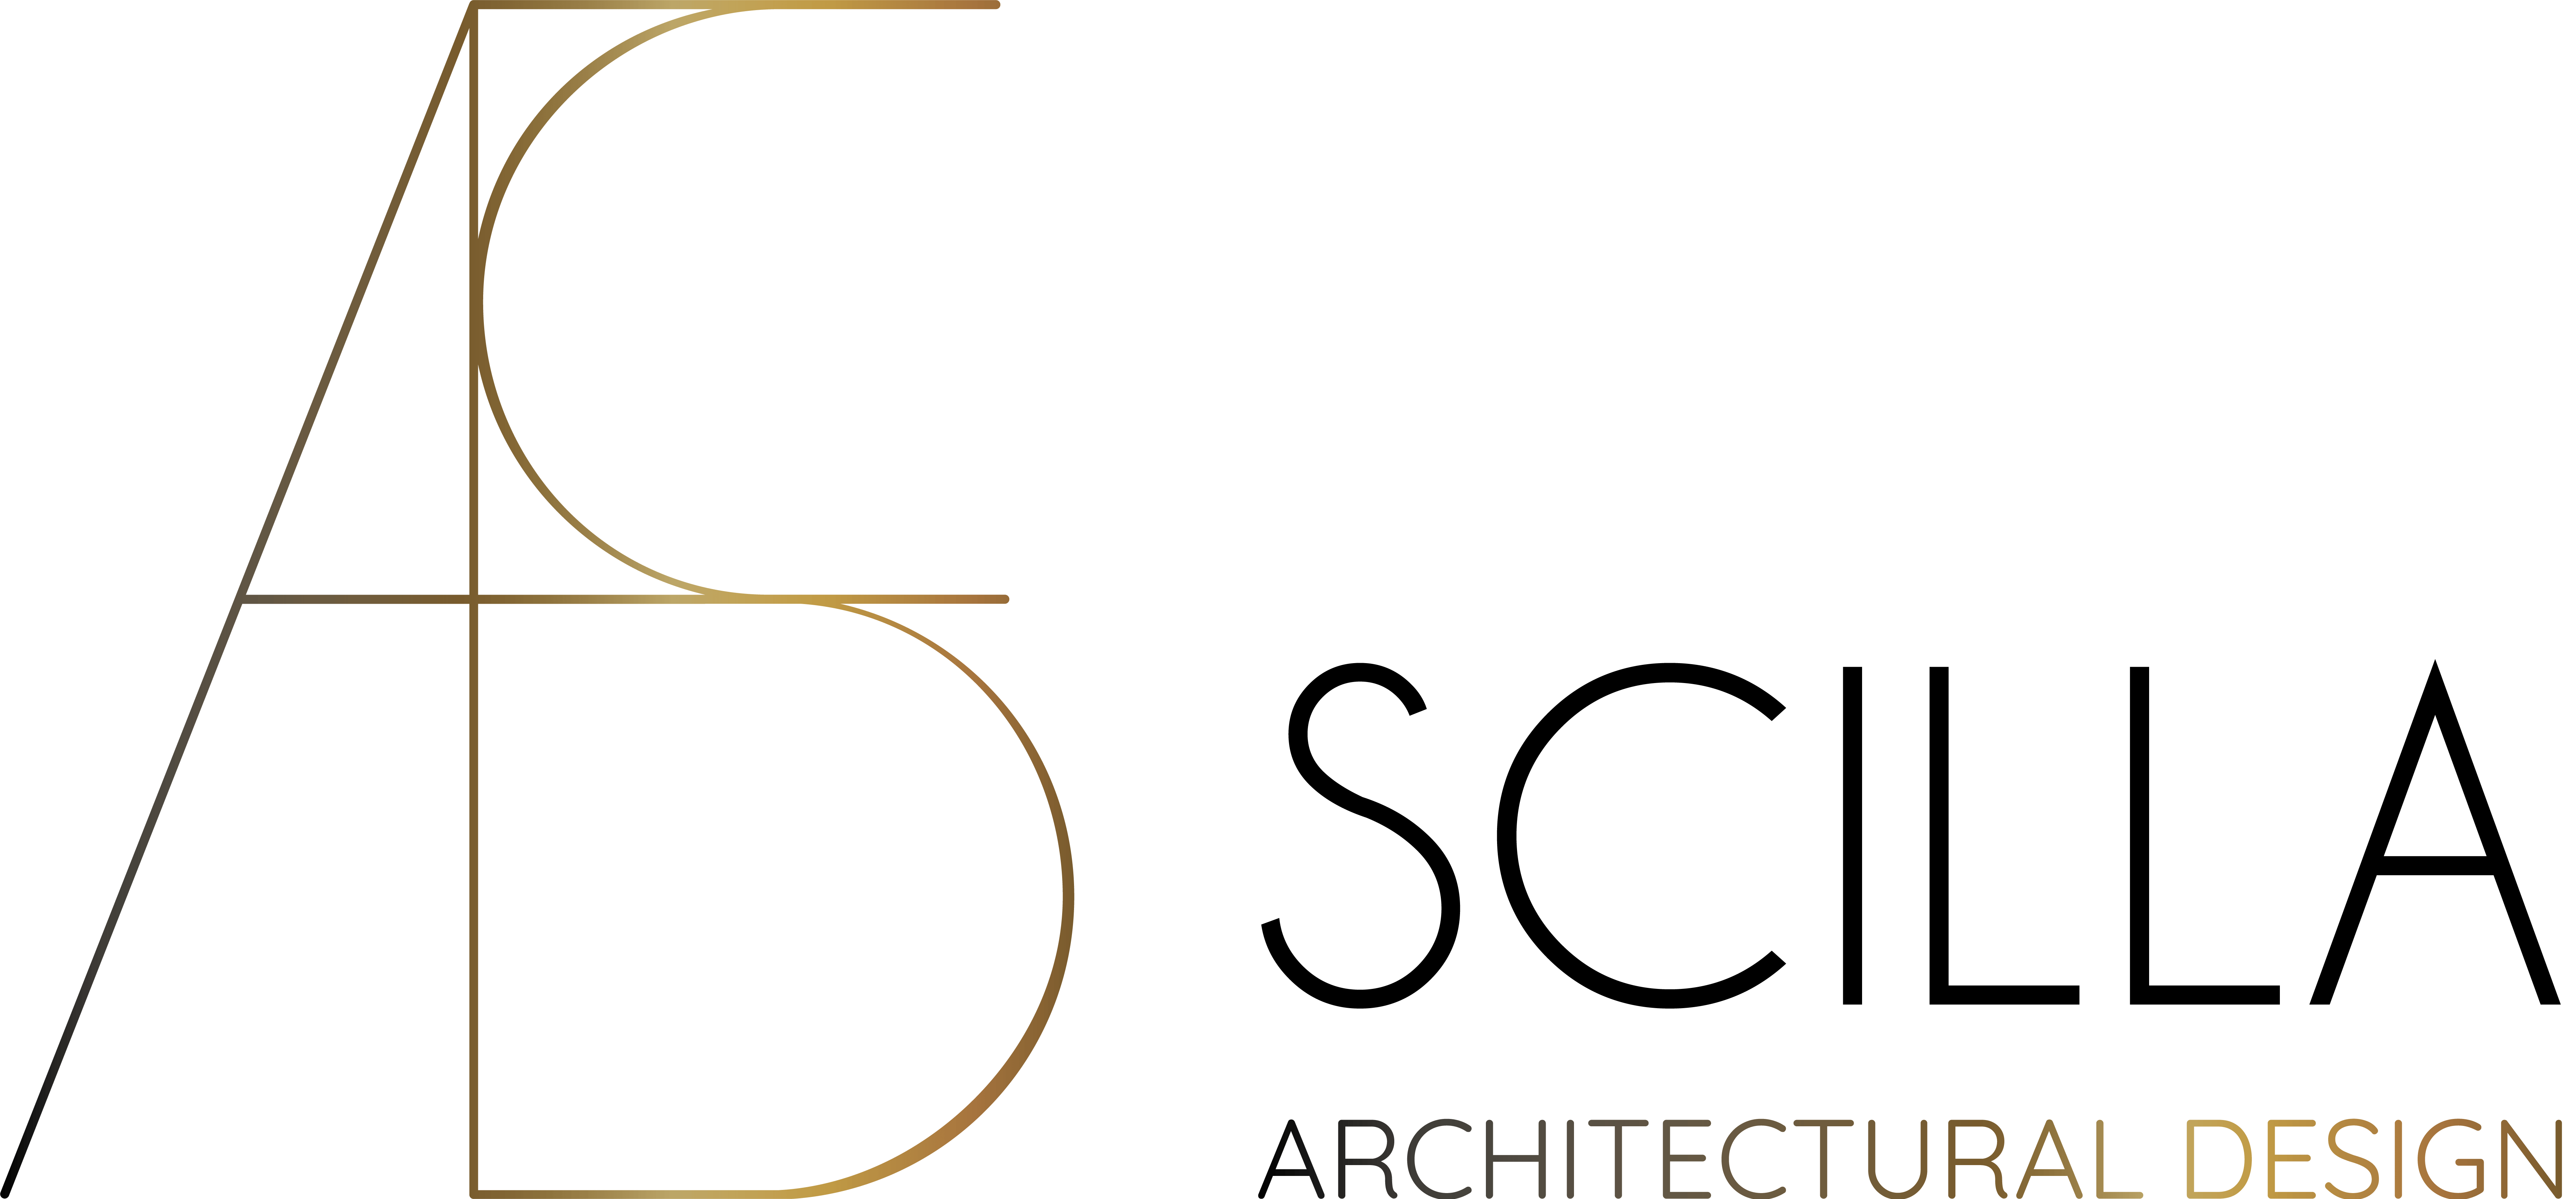 LA création du site web Scilla Architectural Design a été faite par Eywa Web - Agence Digitale Annecy - Genève